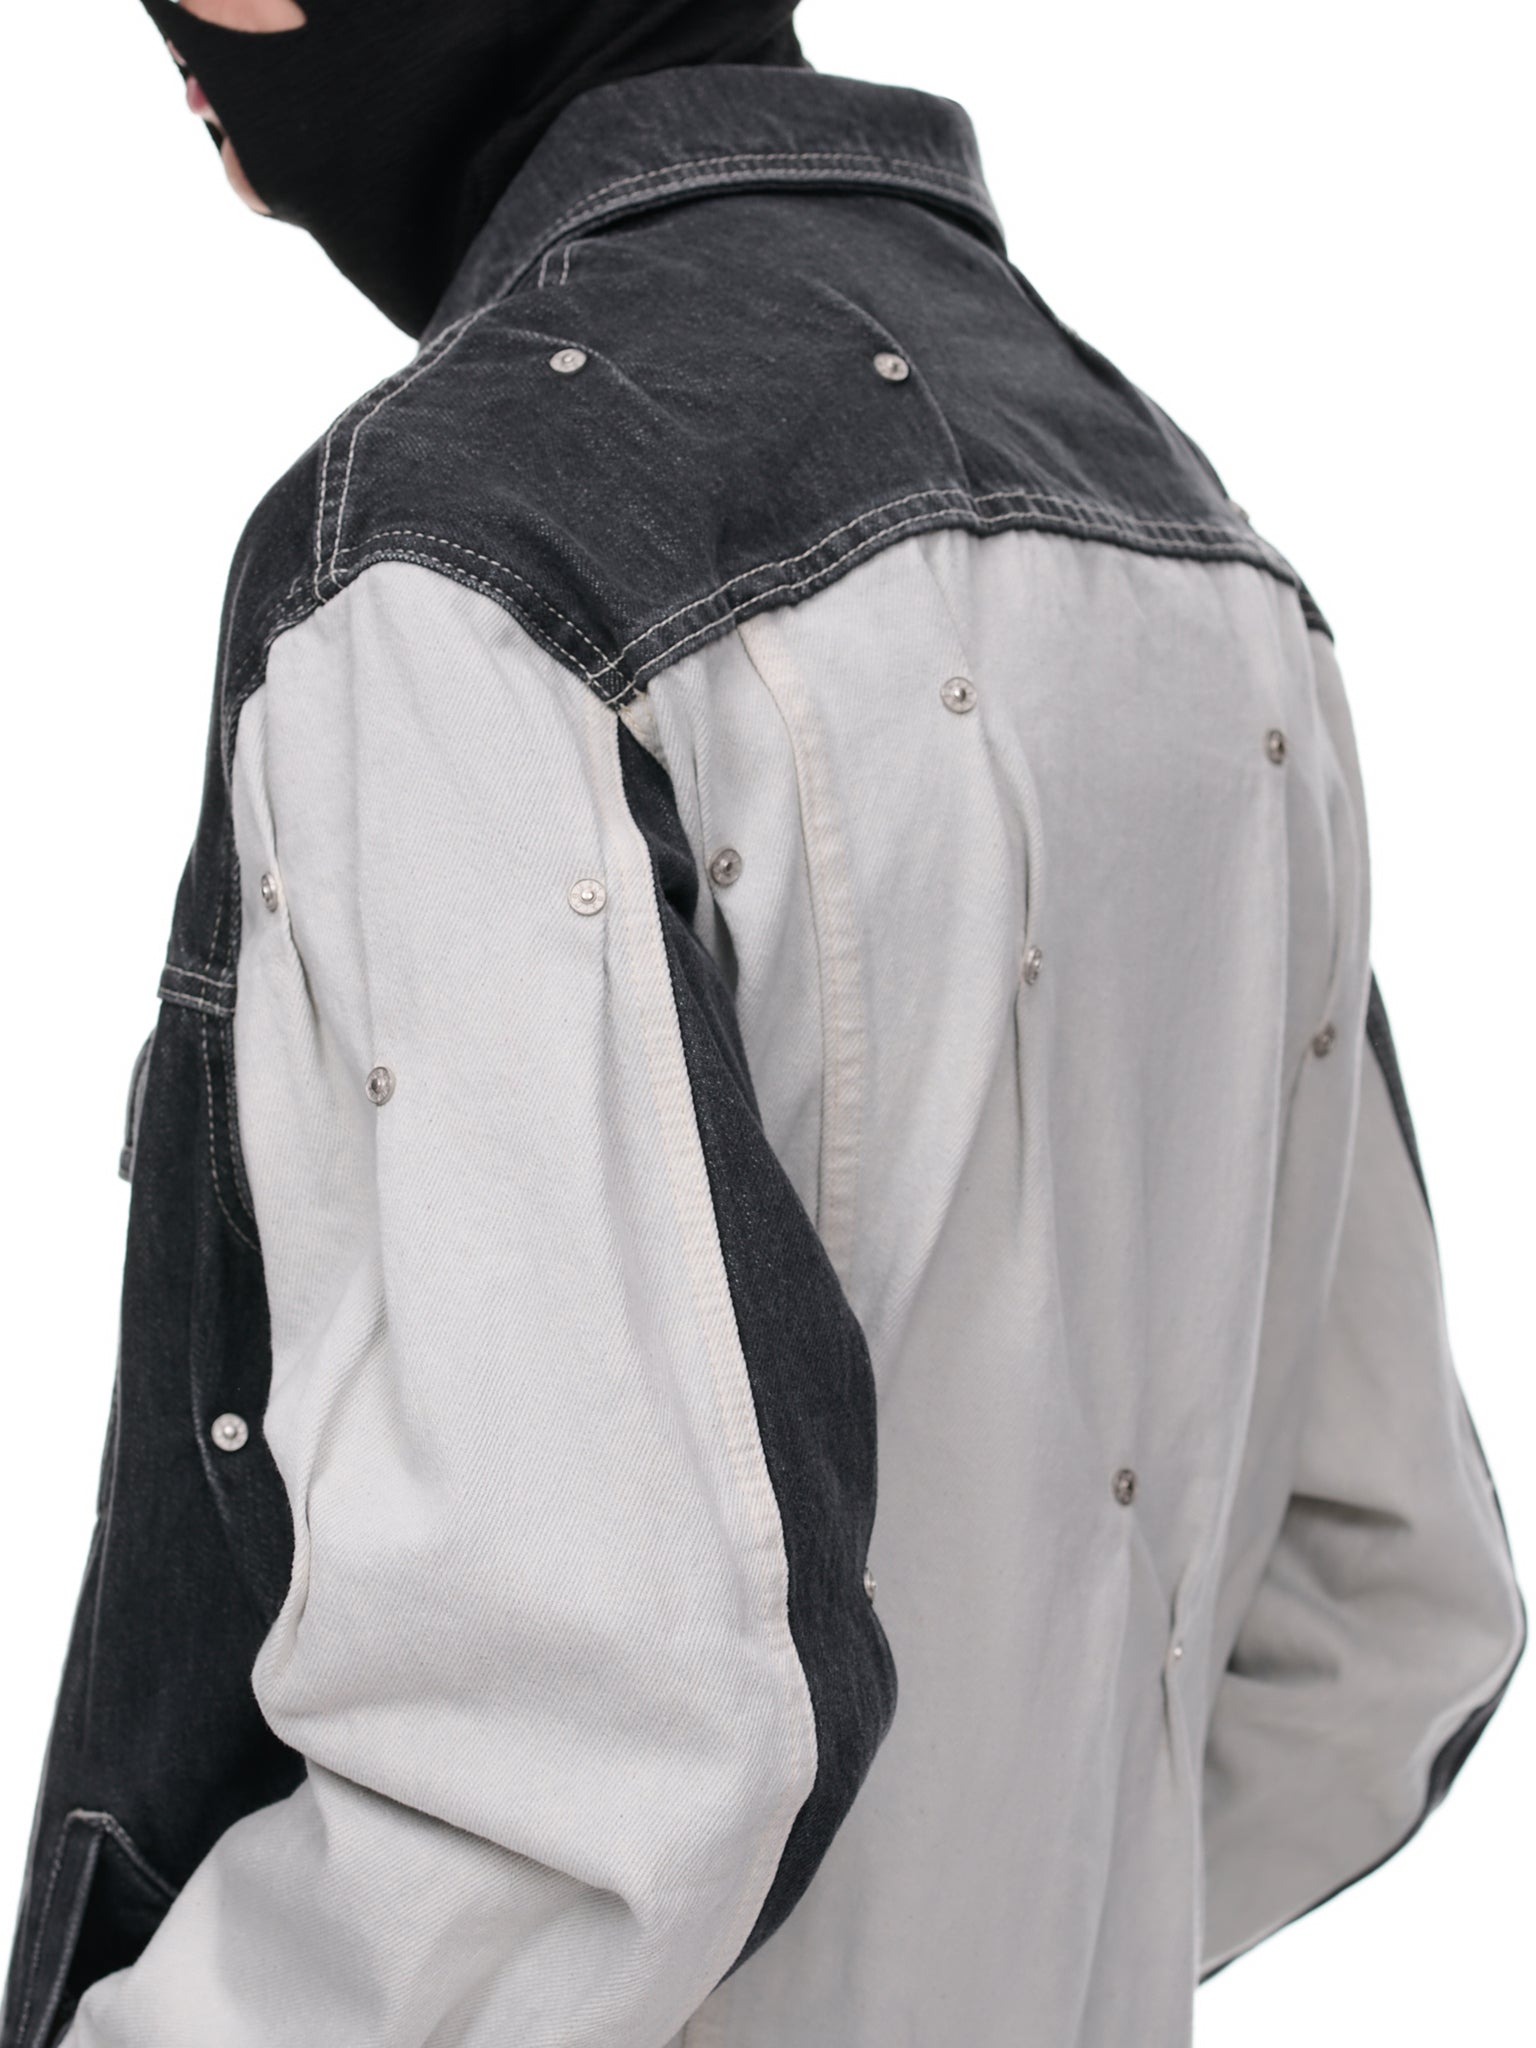 Multi-Rivet Denim Jacket (KUF2MJ08BP-T1183-BLACK-MULTI)